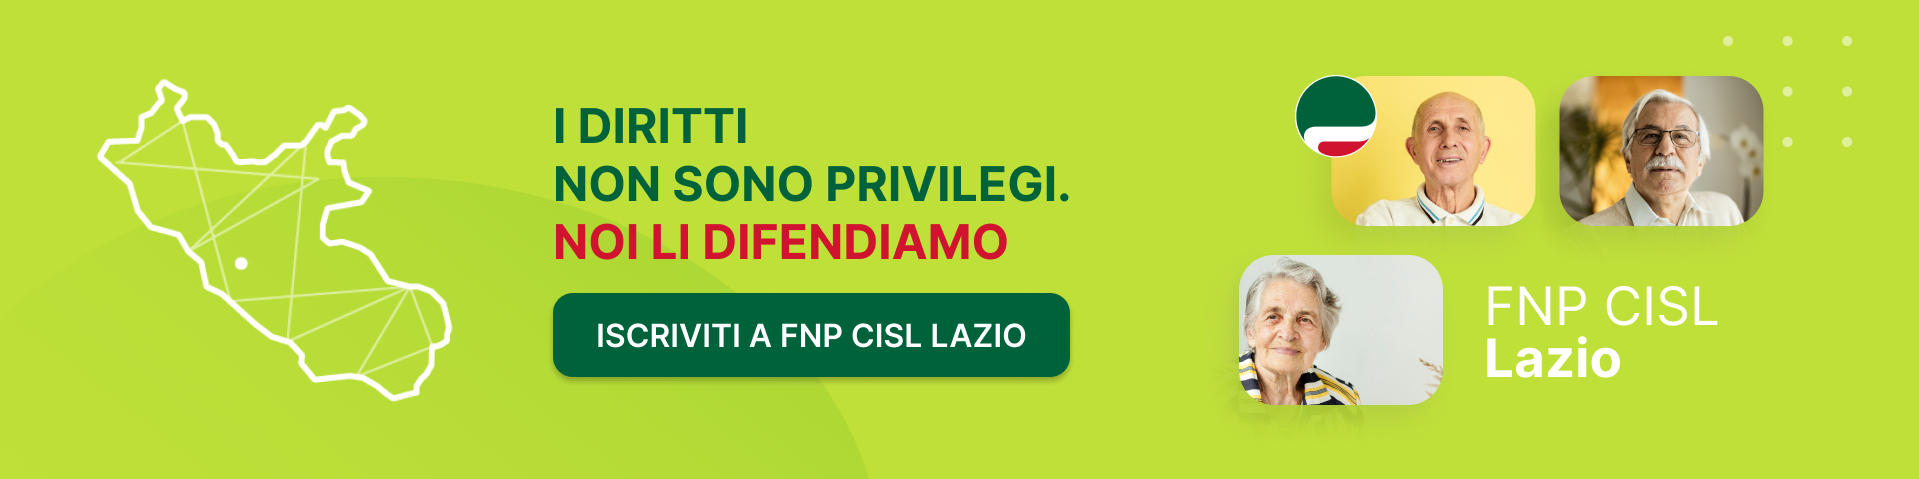 FNP CISL Lazio - I diritti non sono privilegi. NOI LI DIFENDIAMO